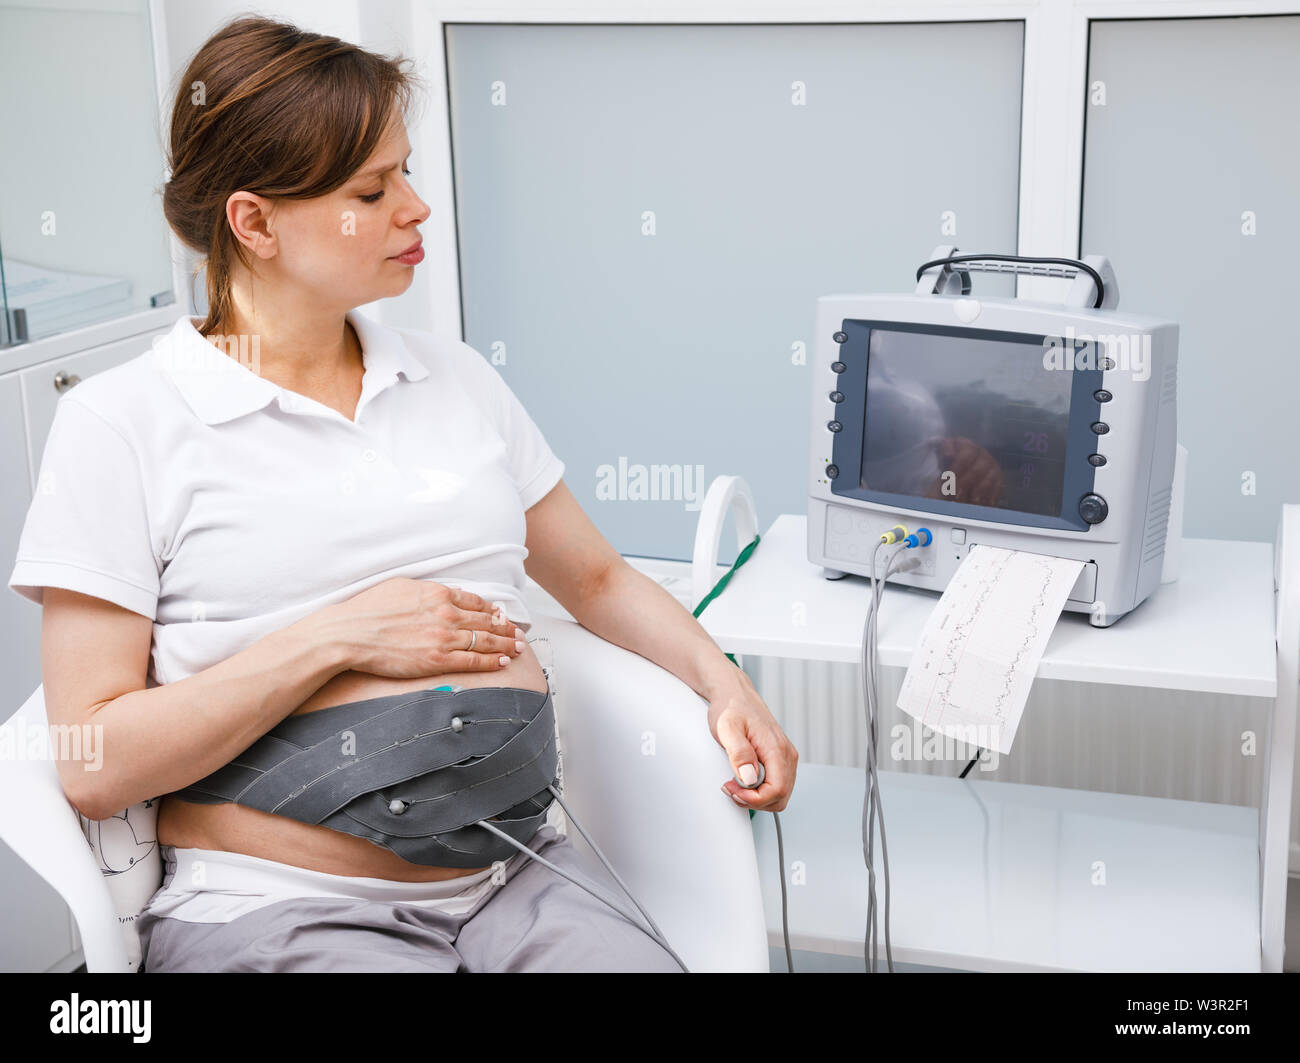 Pregnant woman sitting dans cardiotocography clinique effectuant (CTG). La courroie sur son ventre relié à l'Cardiotocograph alias machine Feta électronique Banque D'Images